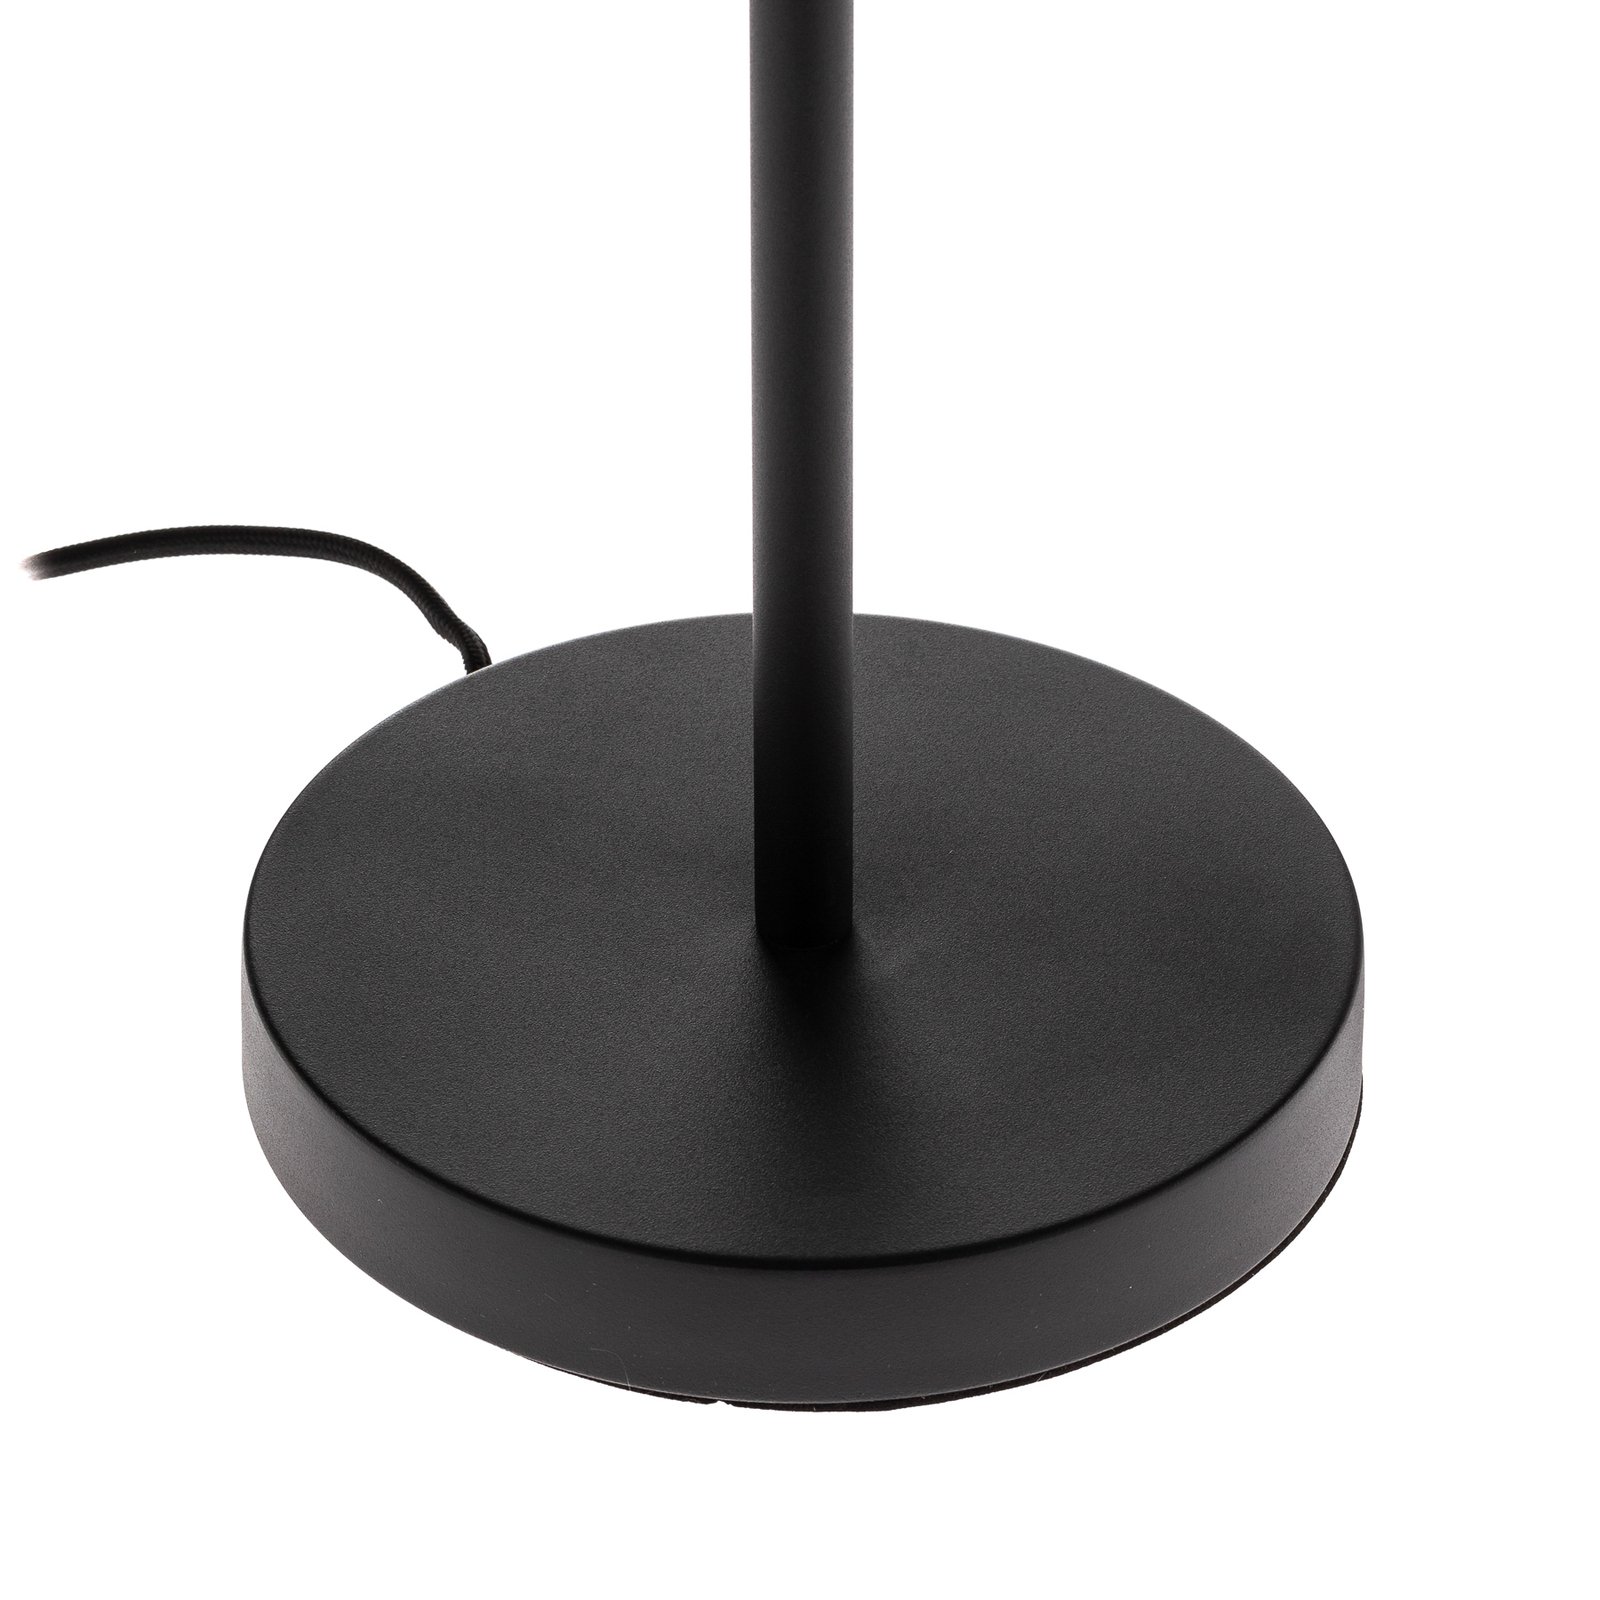 Lucande Sotiana lámpara mesa, esfera vidrio, negro